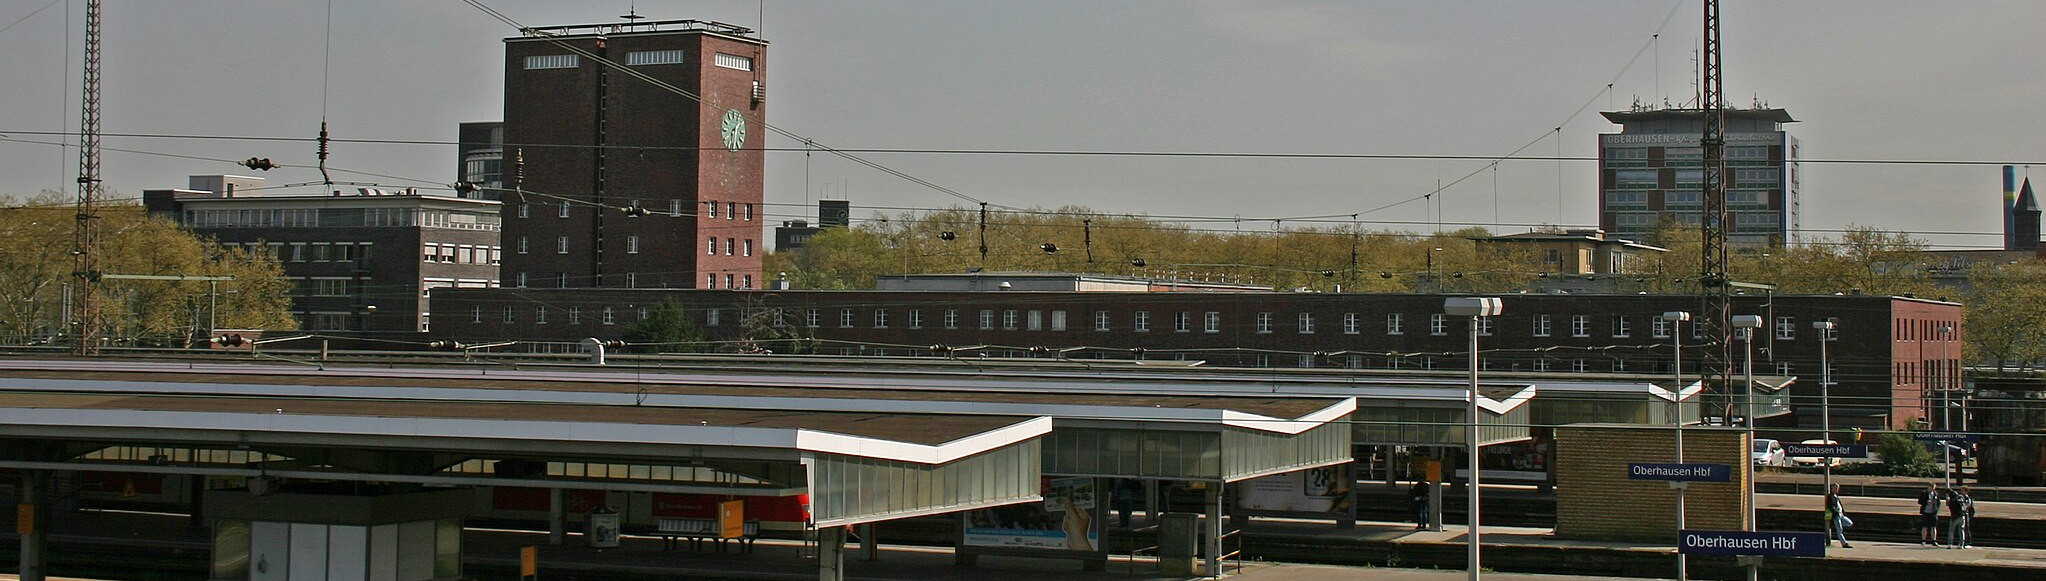 Oberhausen Hauptbahnhof